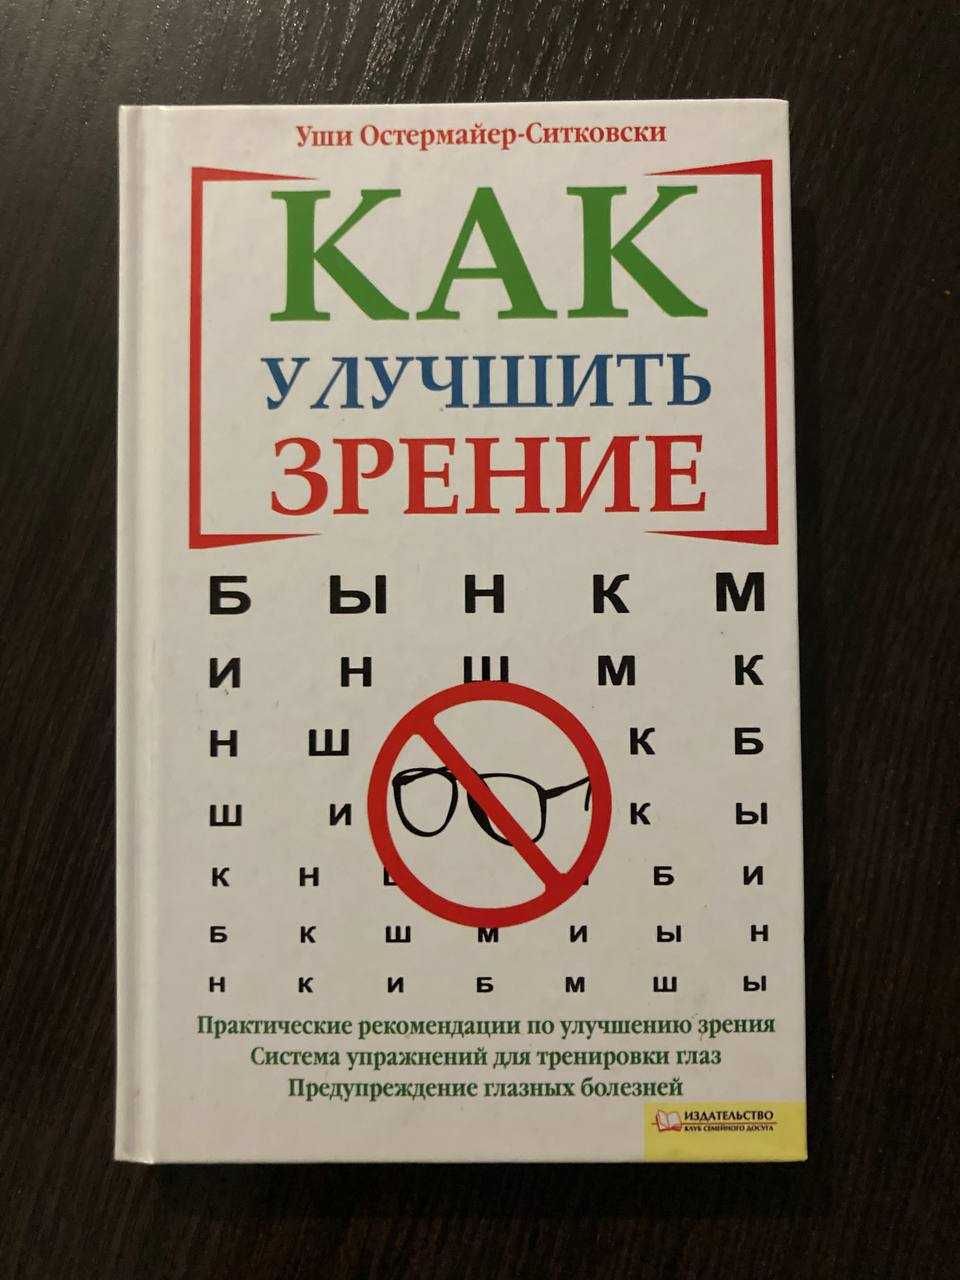 Книга "Как улучшить зрение" Уши Остермайер-Ситковски